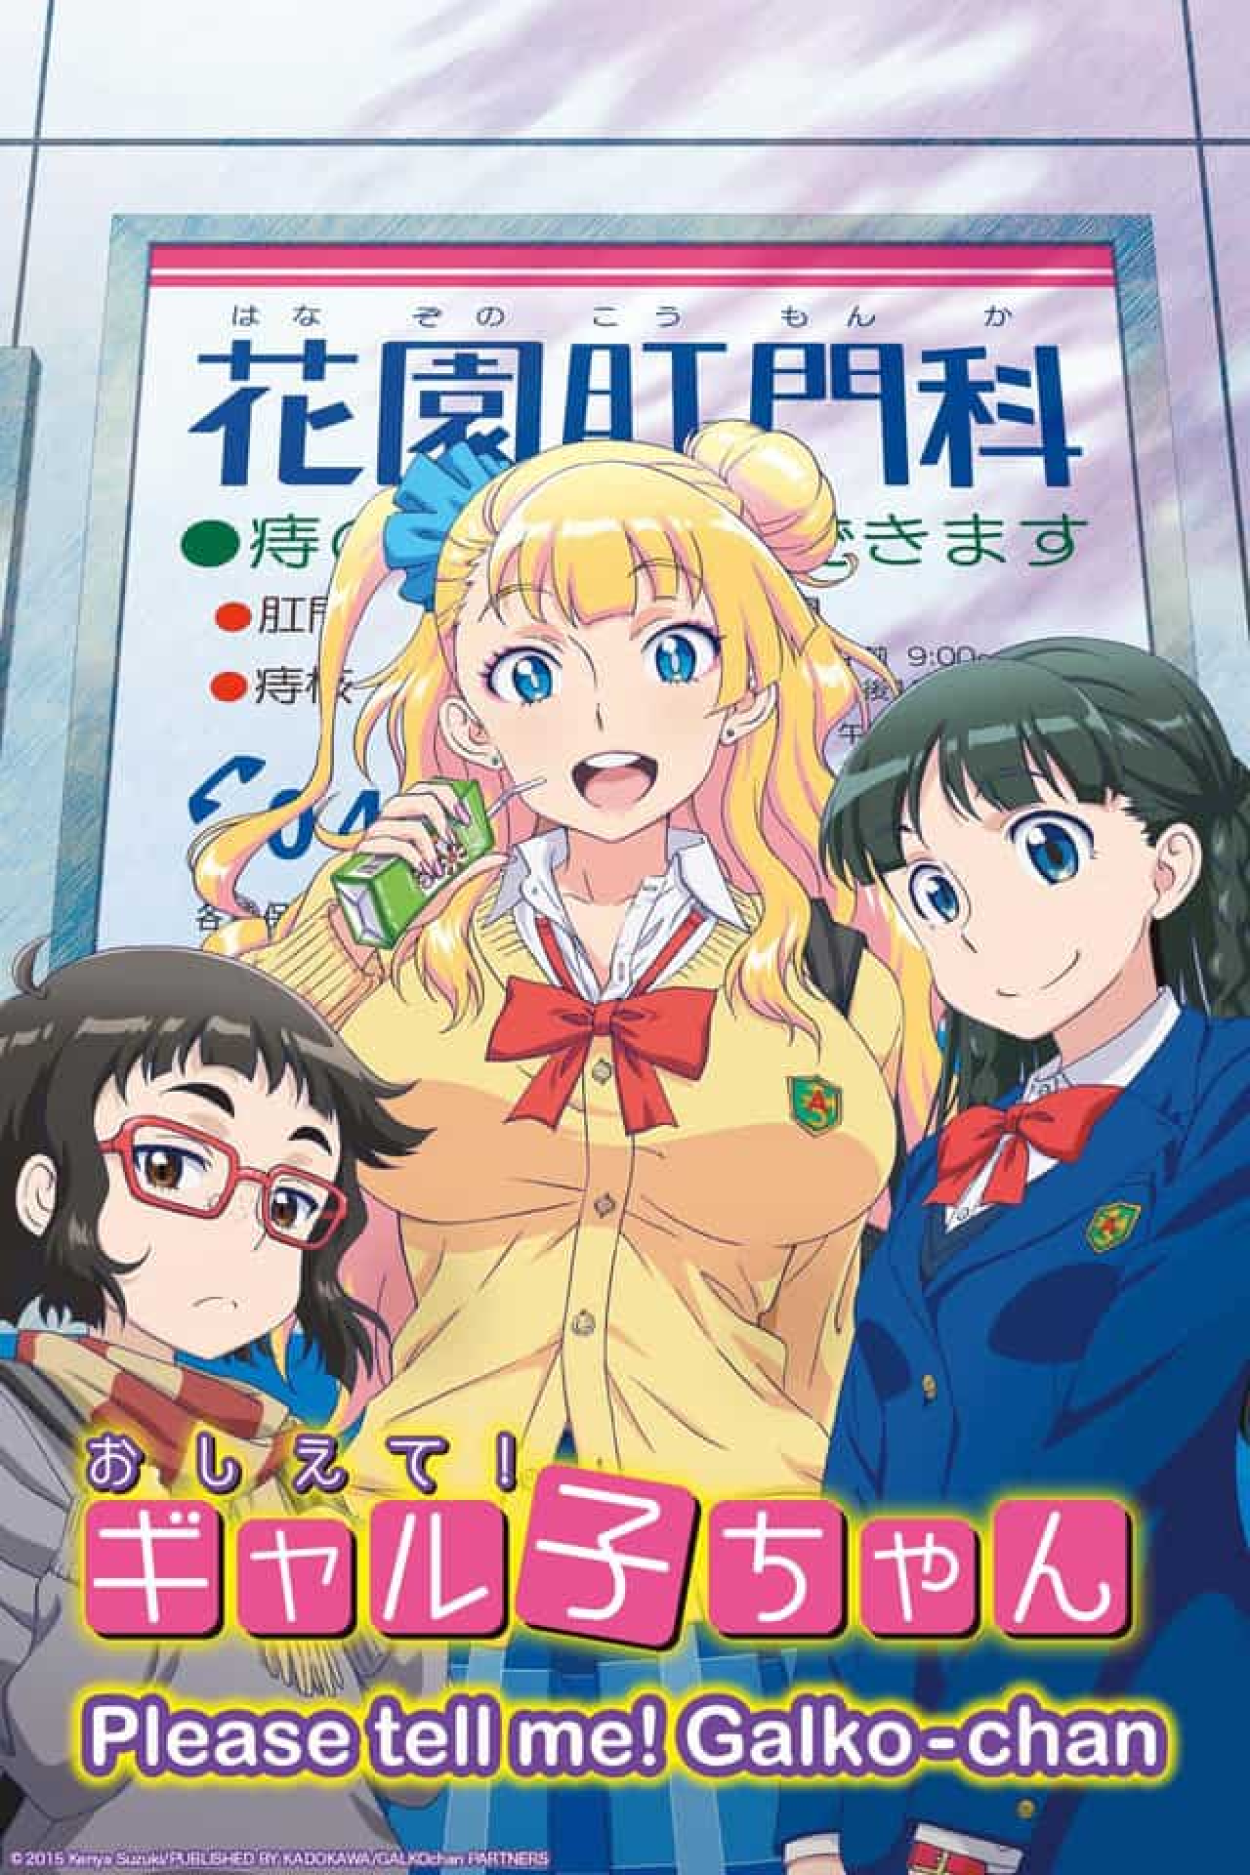 Anime Welcome to Demon School! Iruma-kun - Sinopse, Trailers, Curiosidades  e muito mais - Cinema10